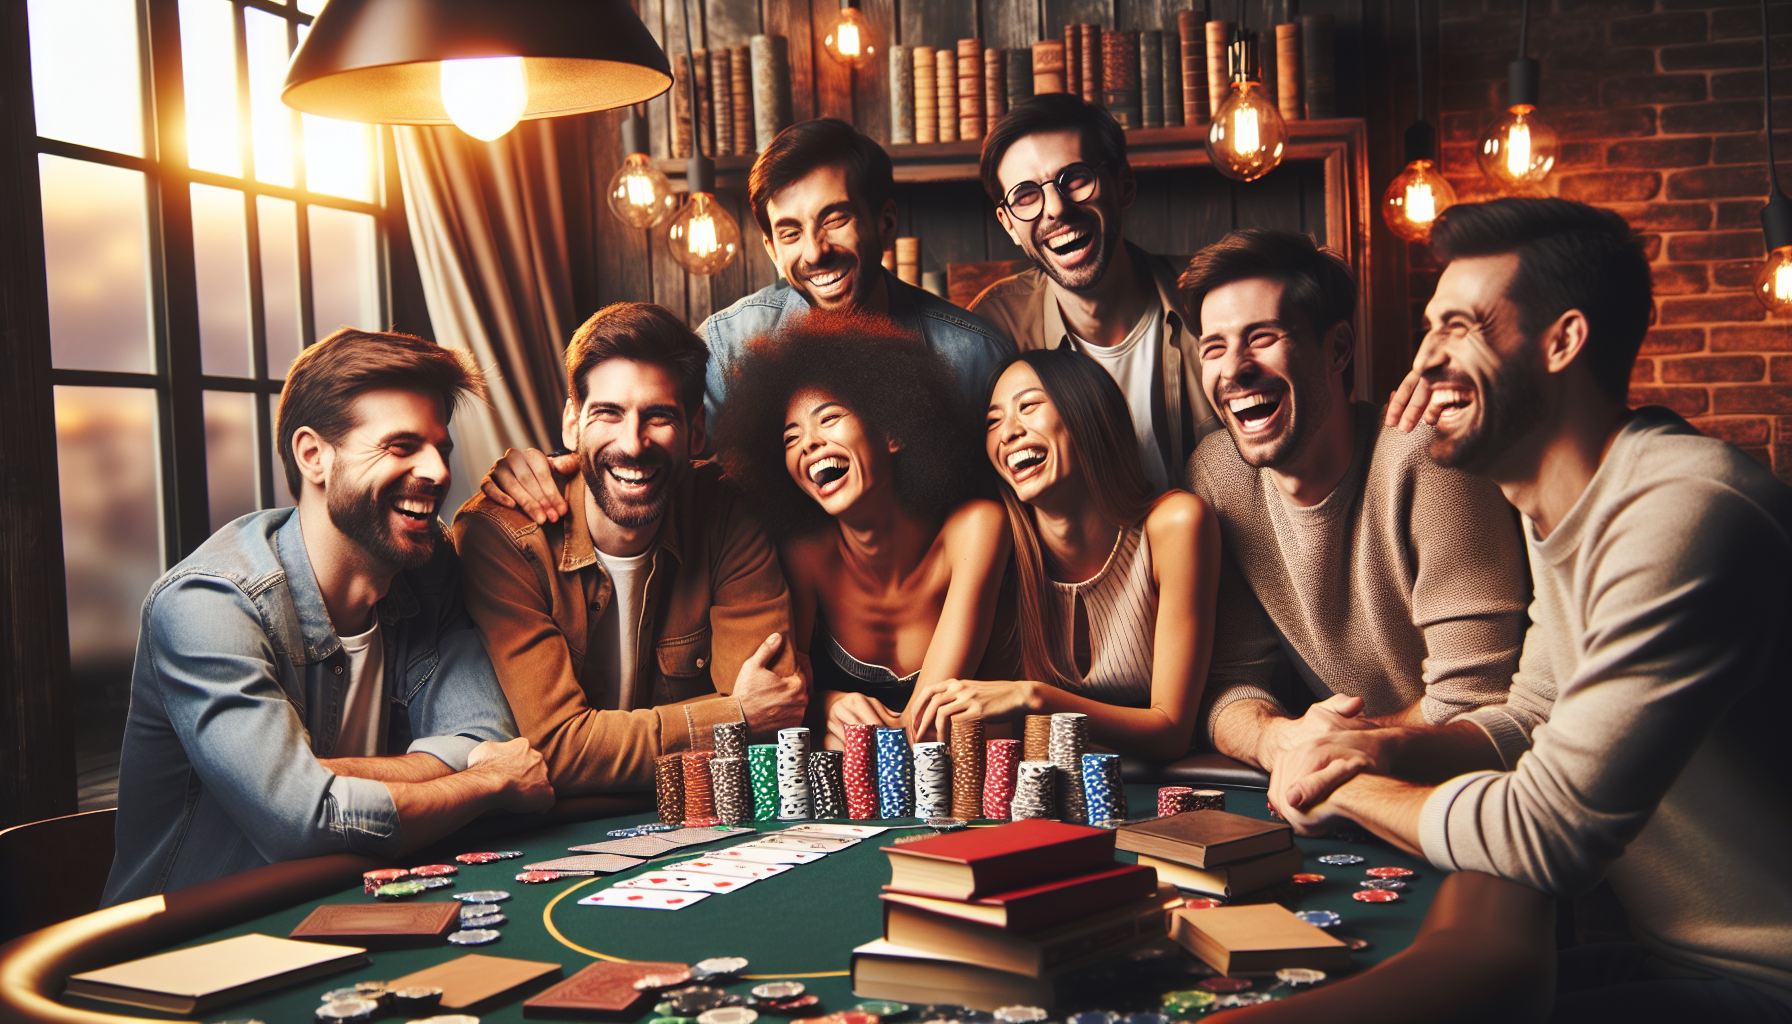 découvrez les meilleurs livres sur le poker et améliorez votre jeu avec des stratégies et des conseils de professionnels du poker.